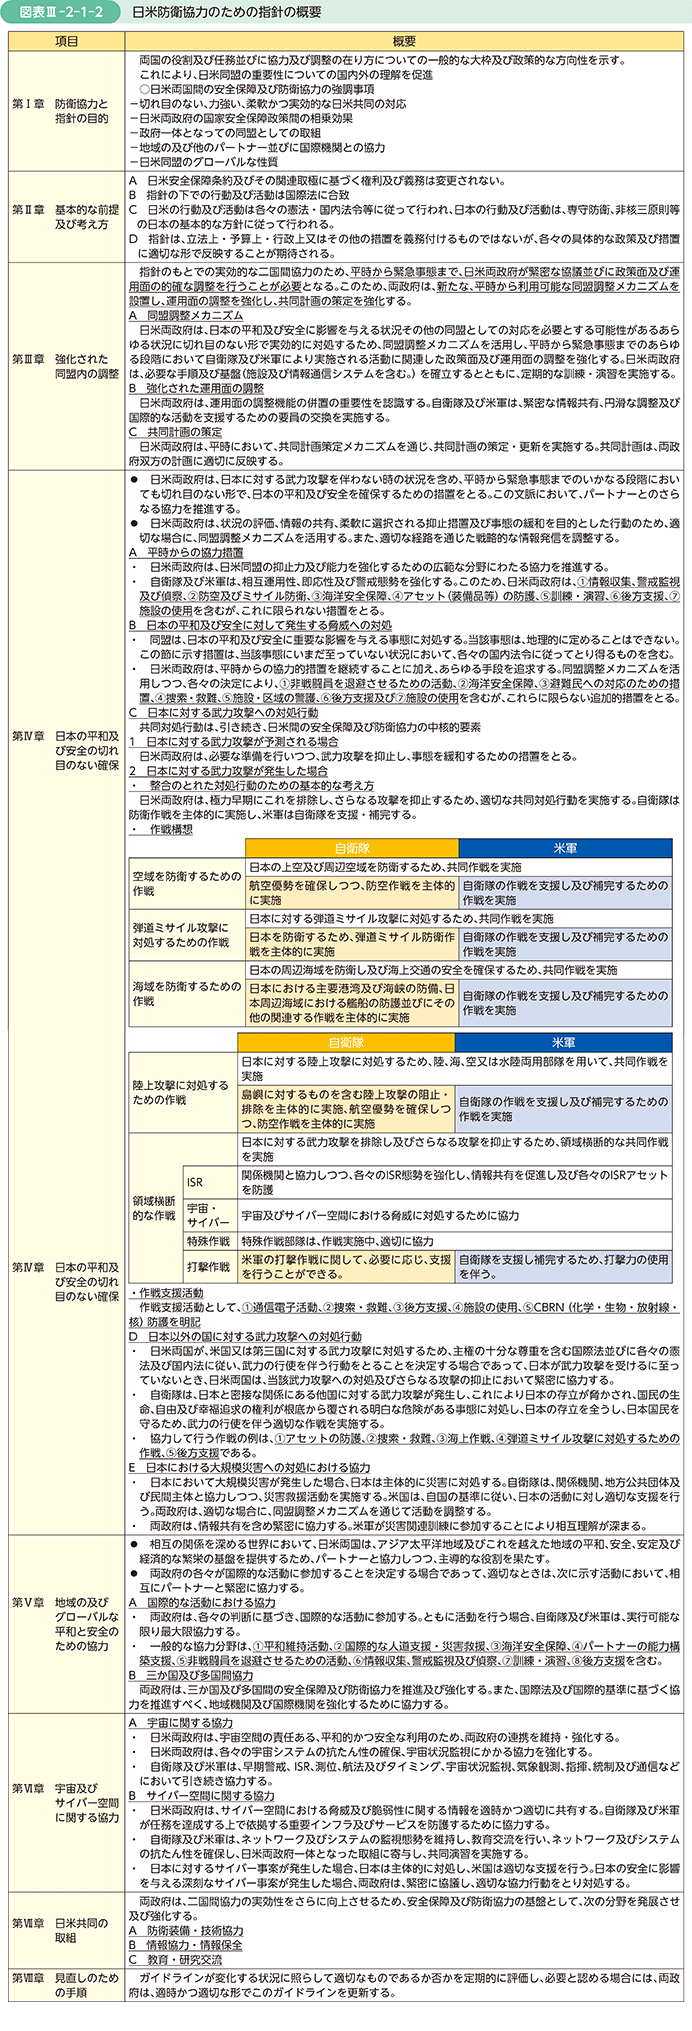 図表III-2-1-2　日米防衛協力のための指針の概要